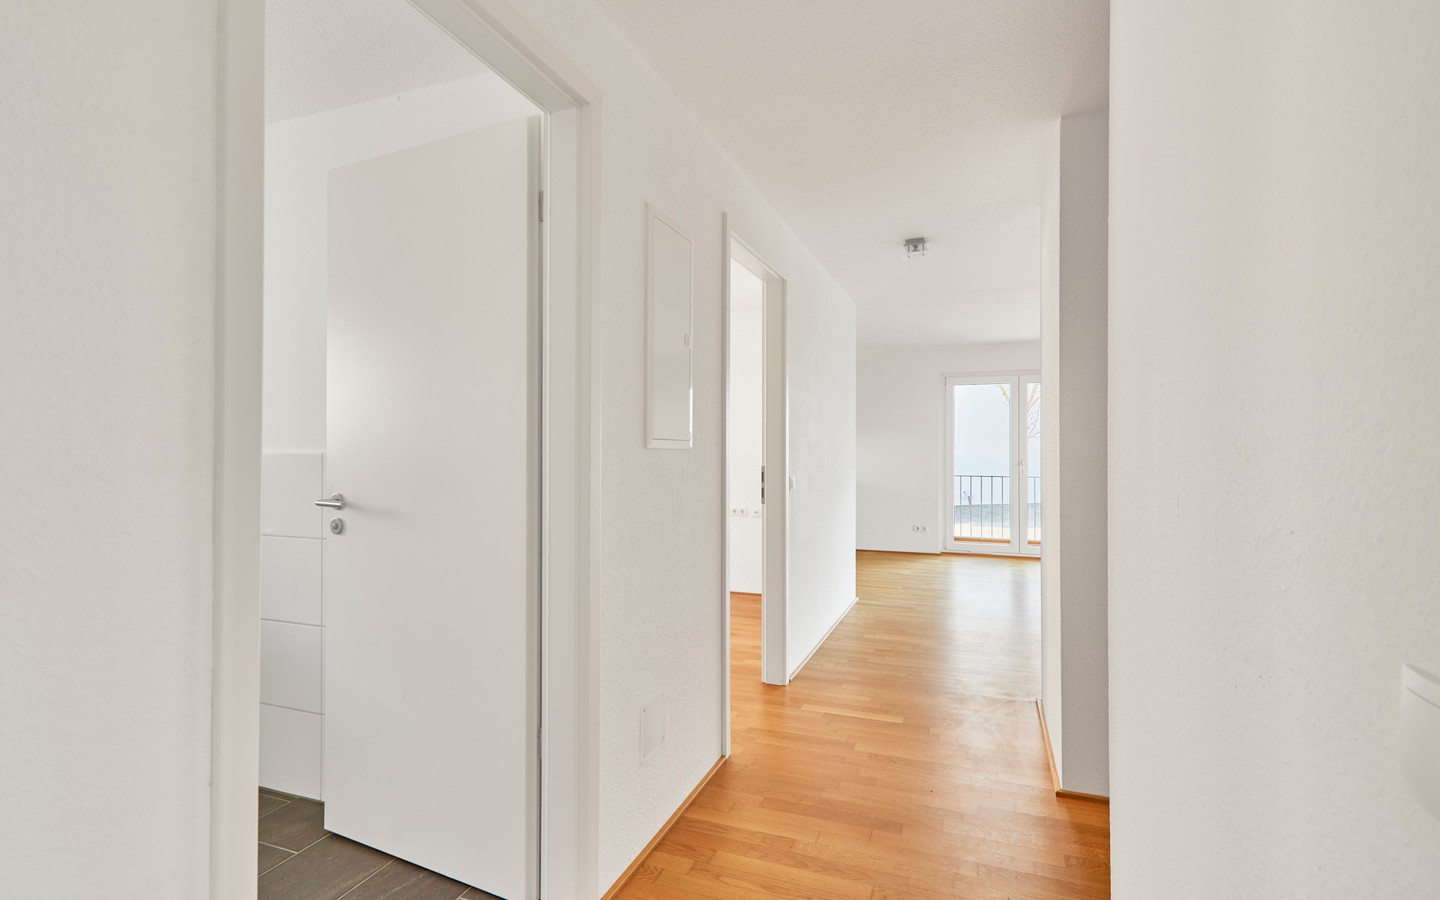 Diele - Modern und barrierefrei wohnen in Schriesheim: 3-Zimmer-EG-Wohnung mit Garten und 2 Stellplätzen